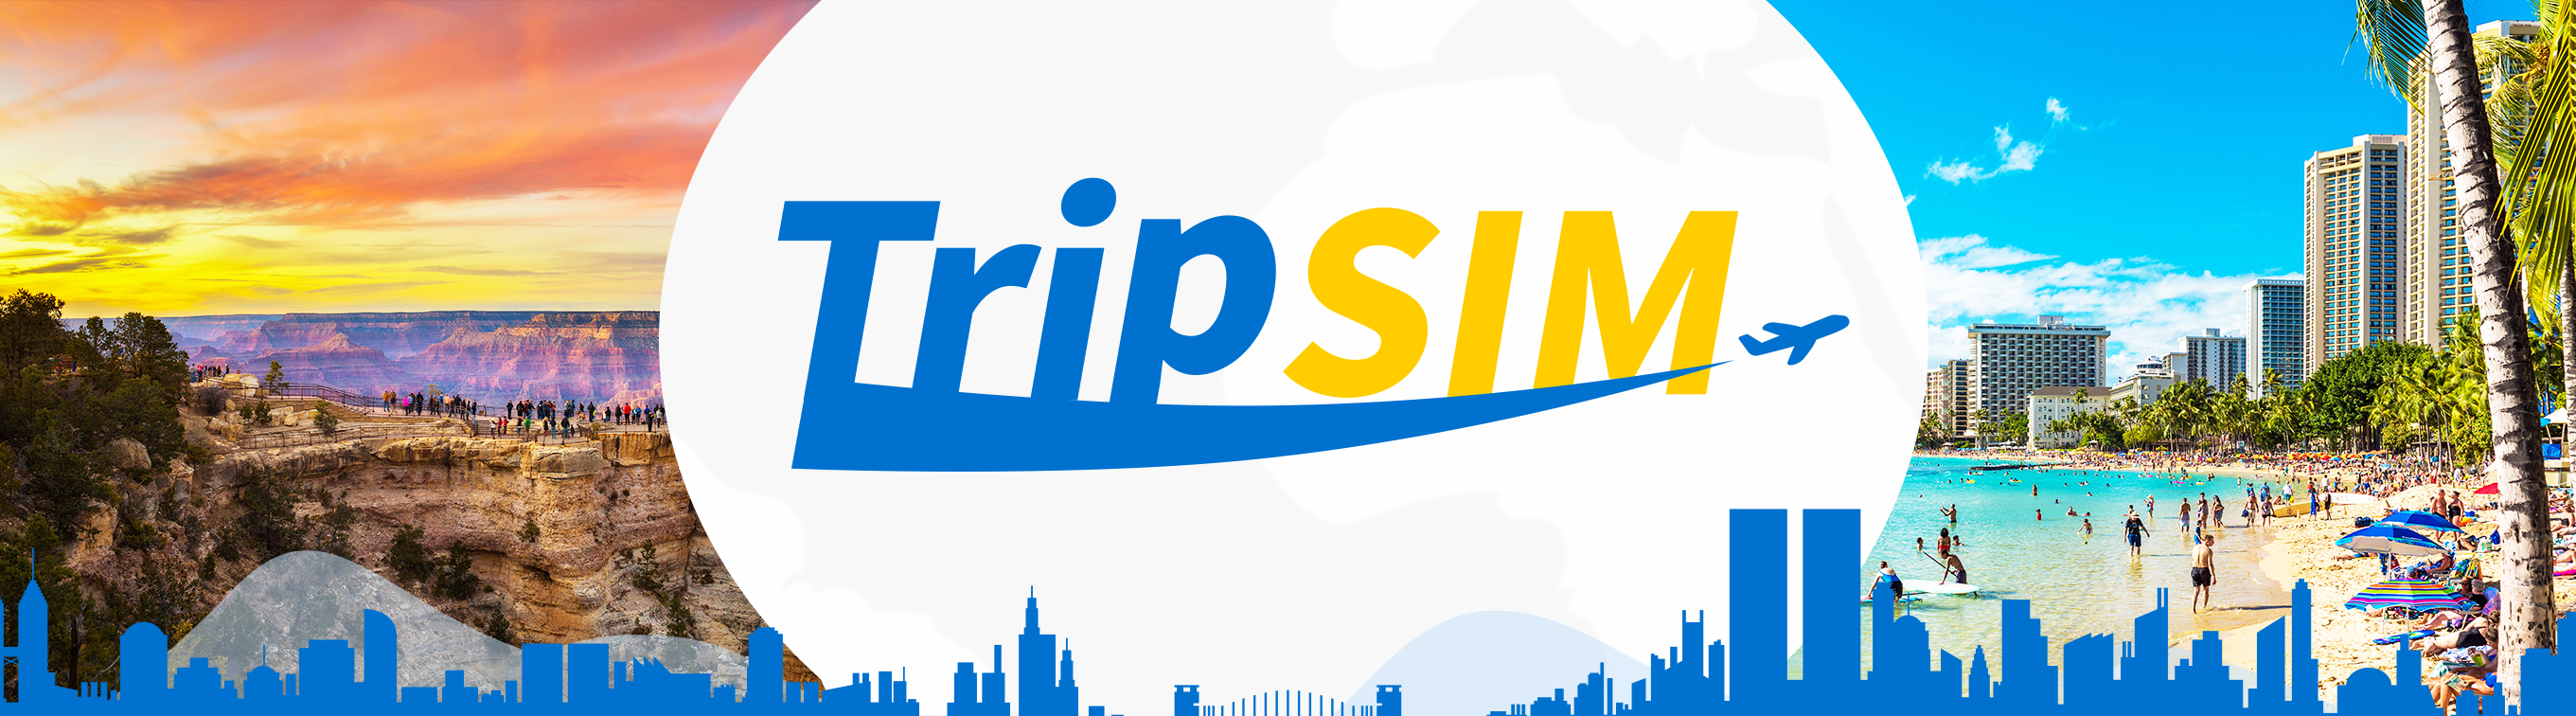 Trip SIM 自分のスマホで完結 120カ国以上で利用可能 返却不要